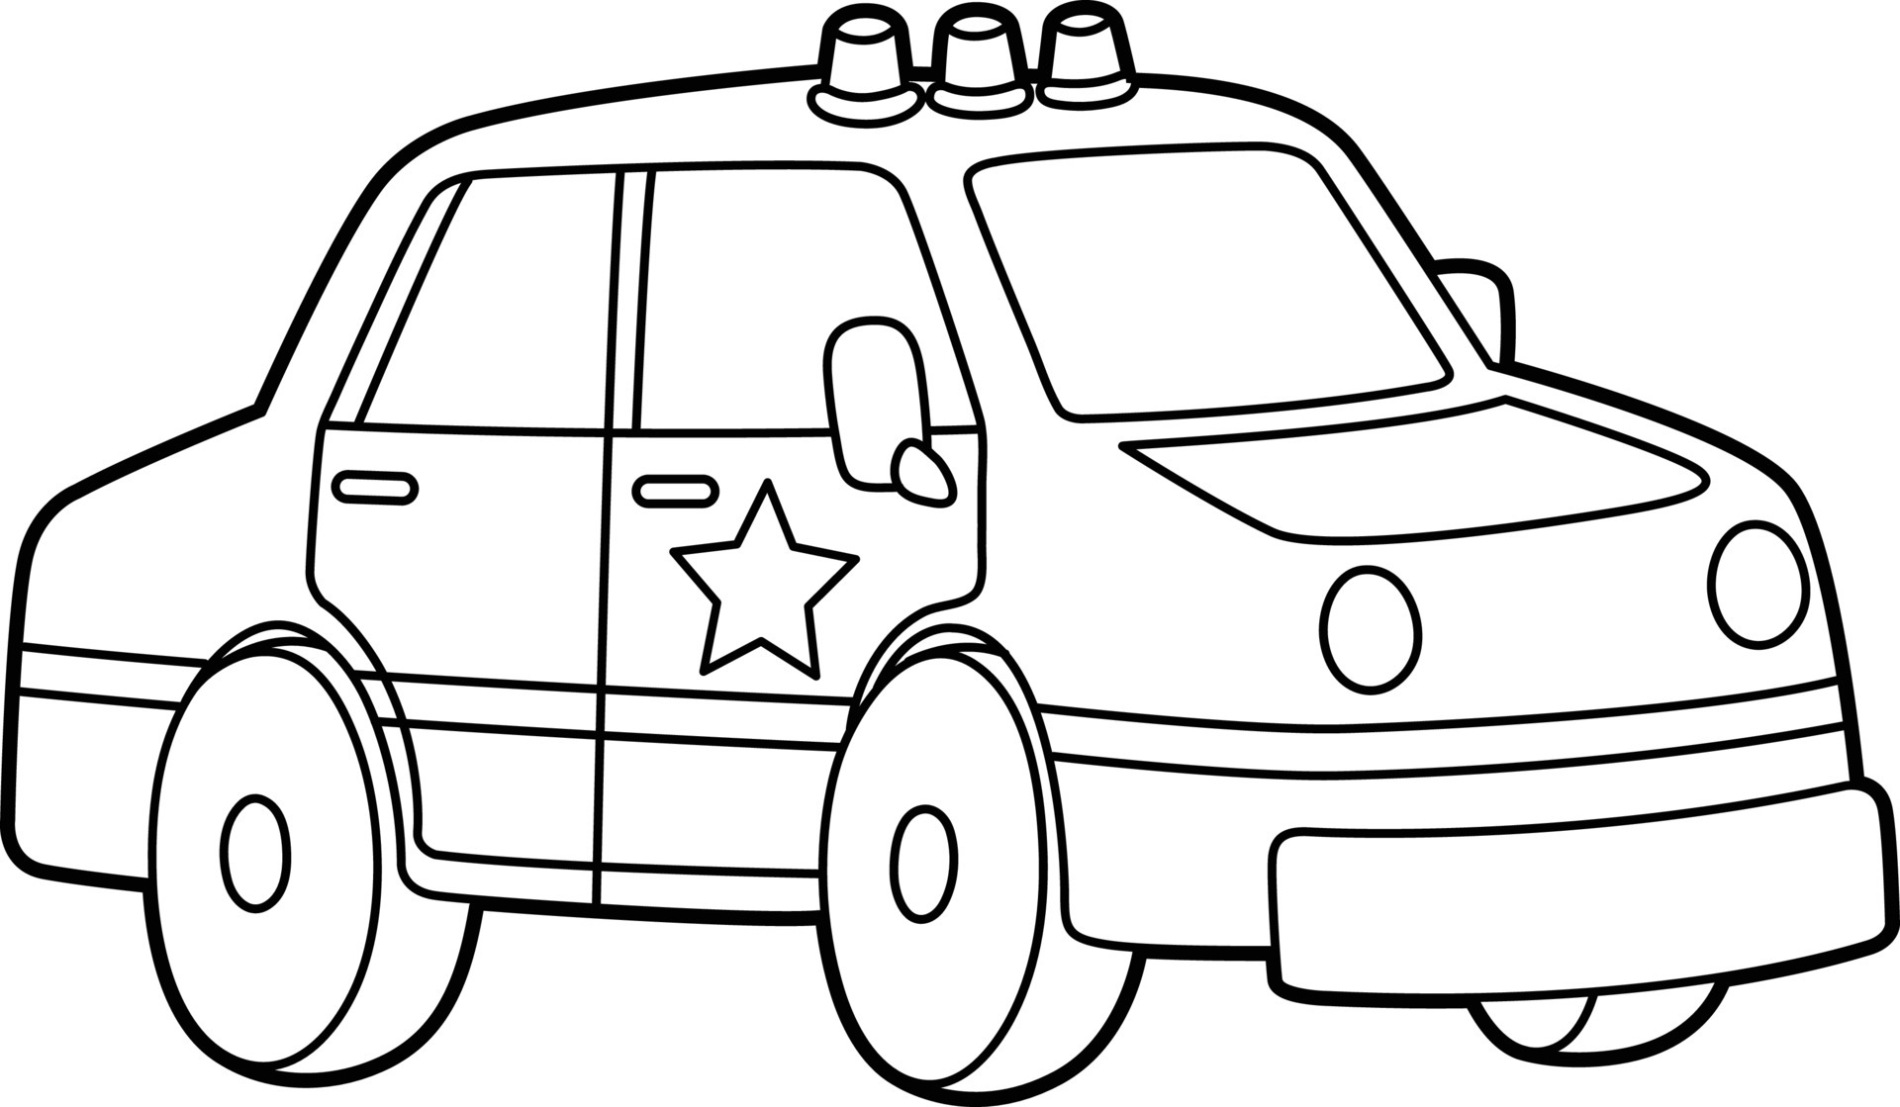 Politieauto Kleurplaat